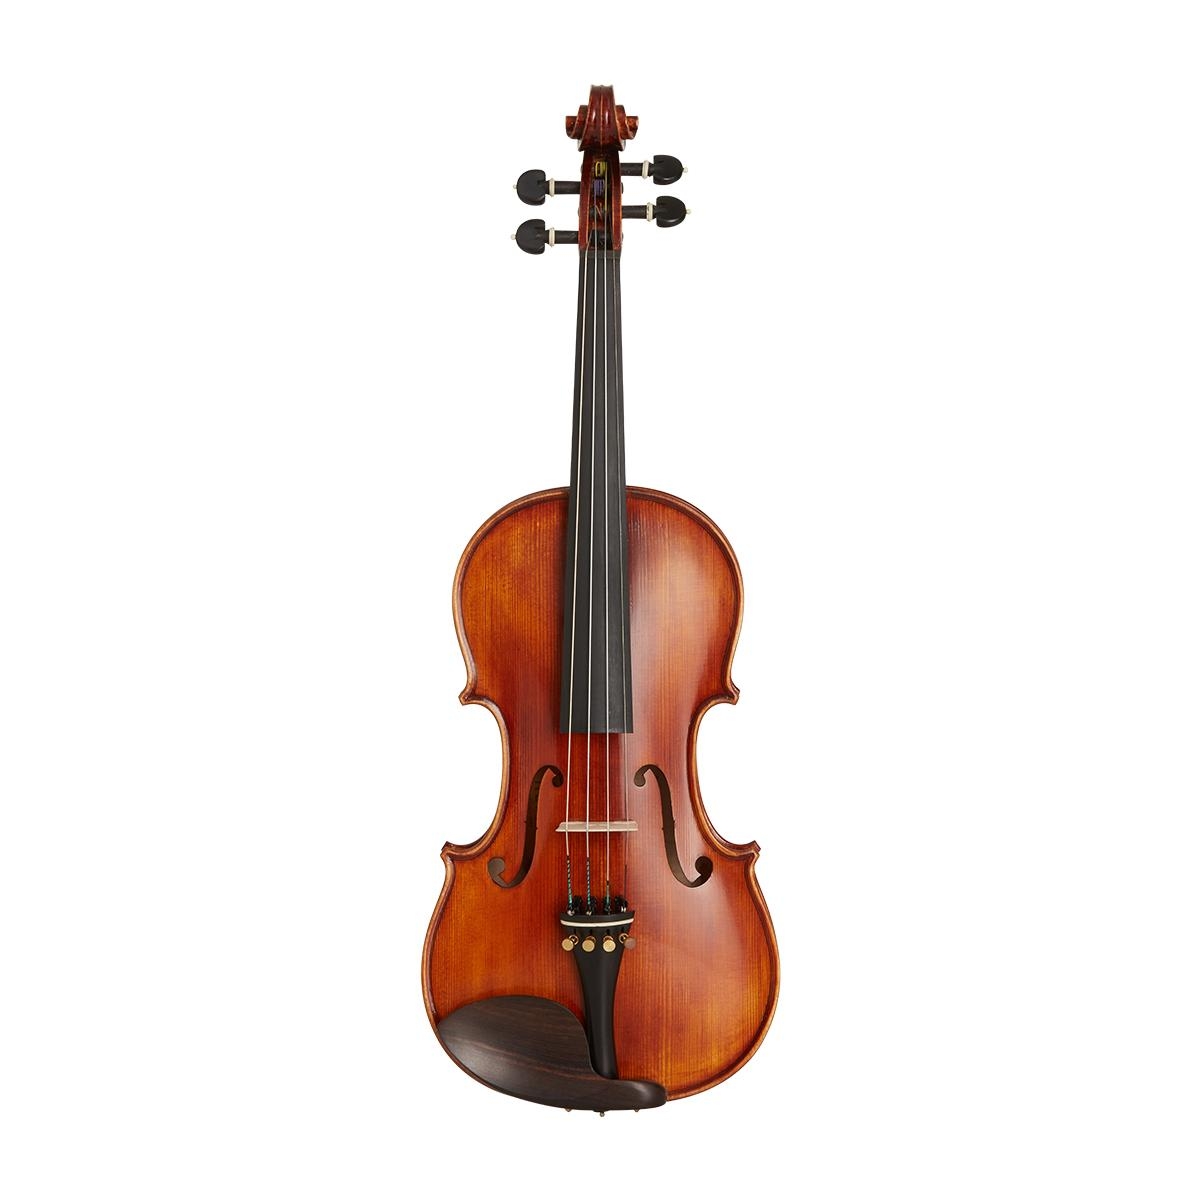 Violino 4/4 Alfa GGVL 1000